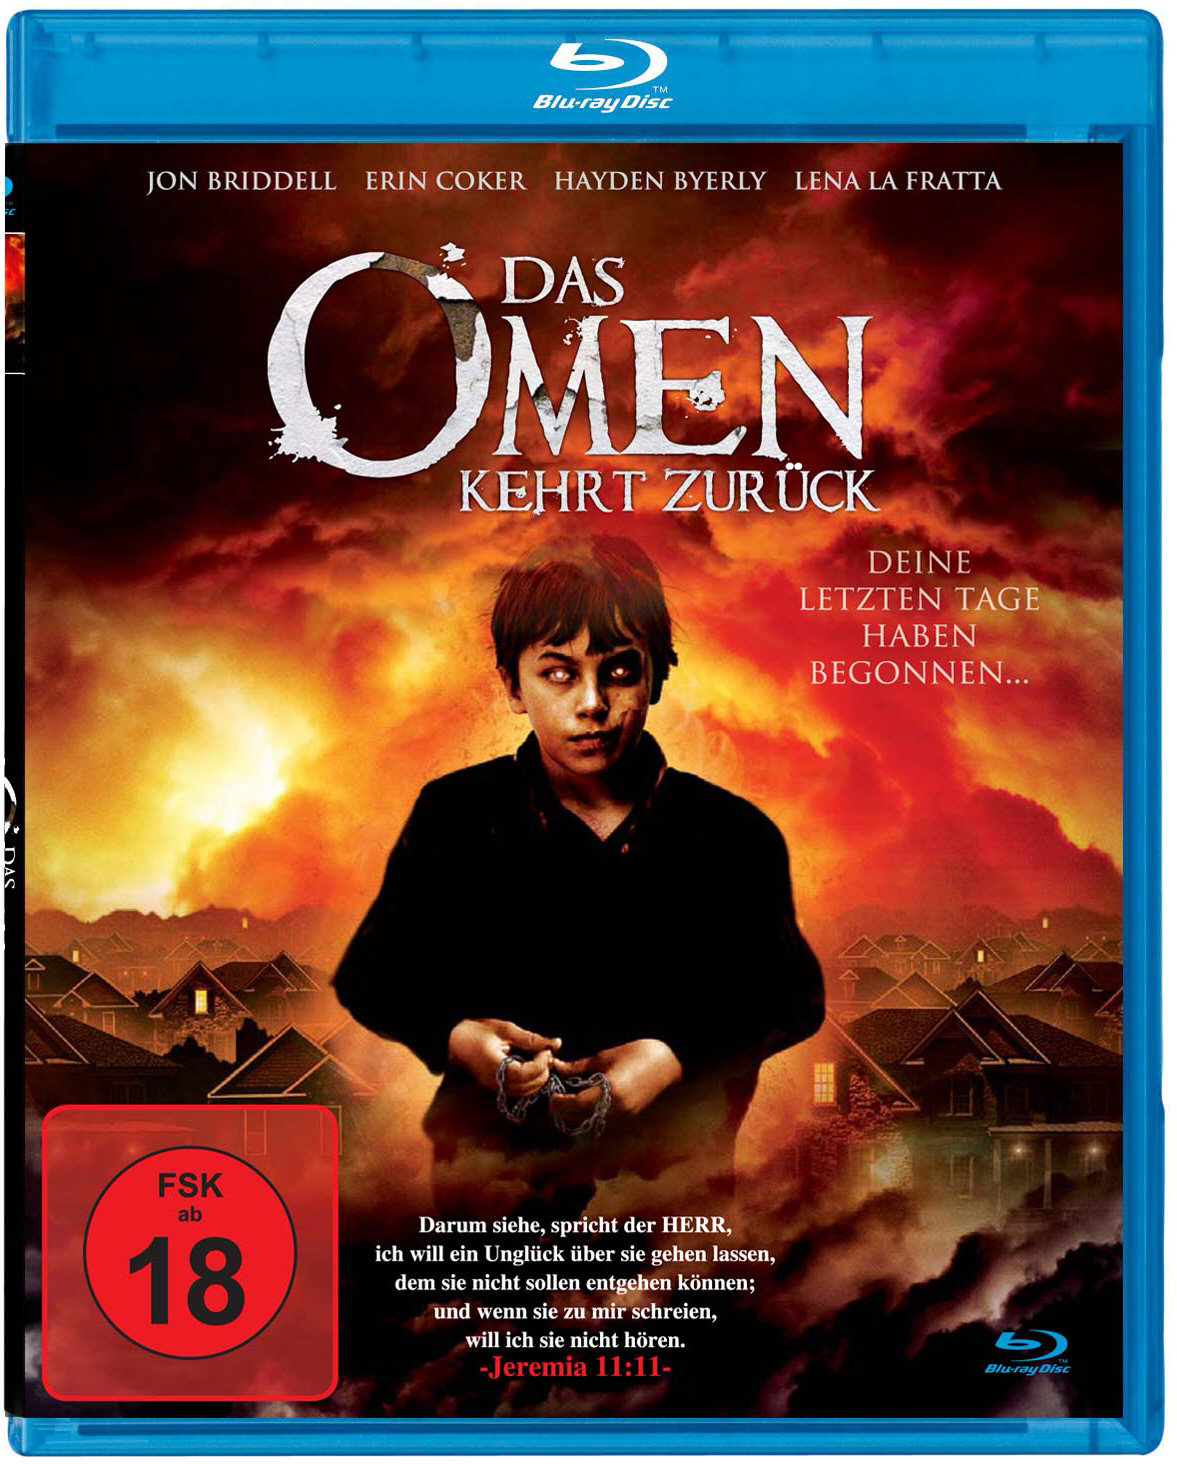 11/11/11 Das Omen kehrt zurück (Blu-Ray) S-03 (NEU & OVP)